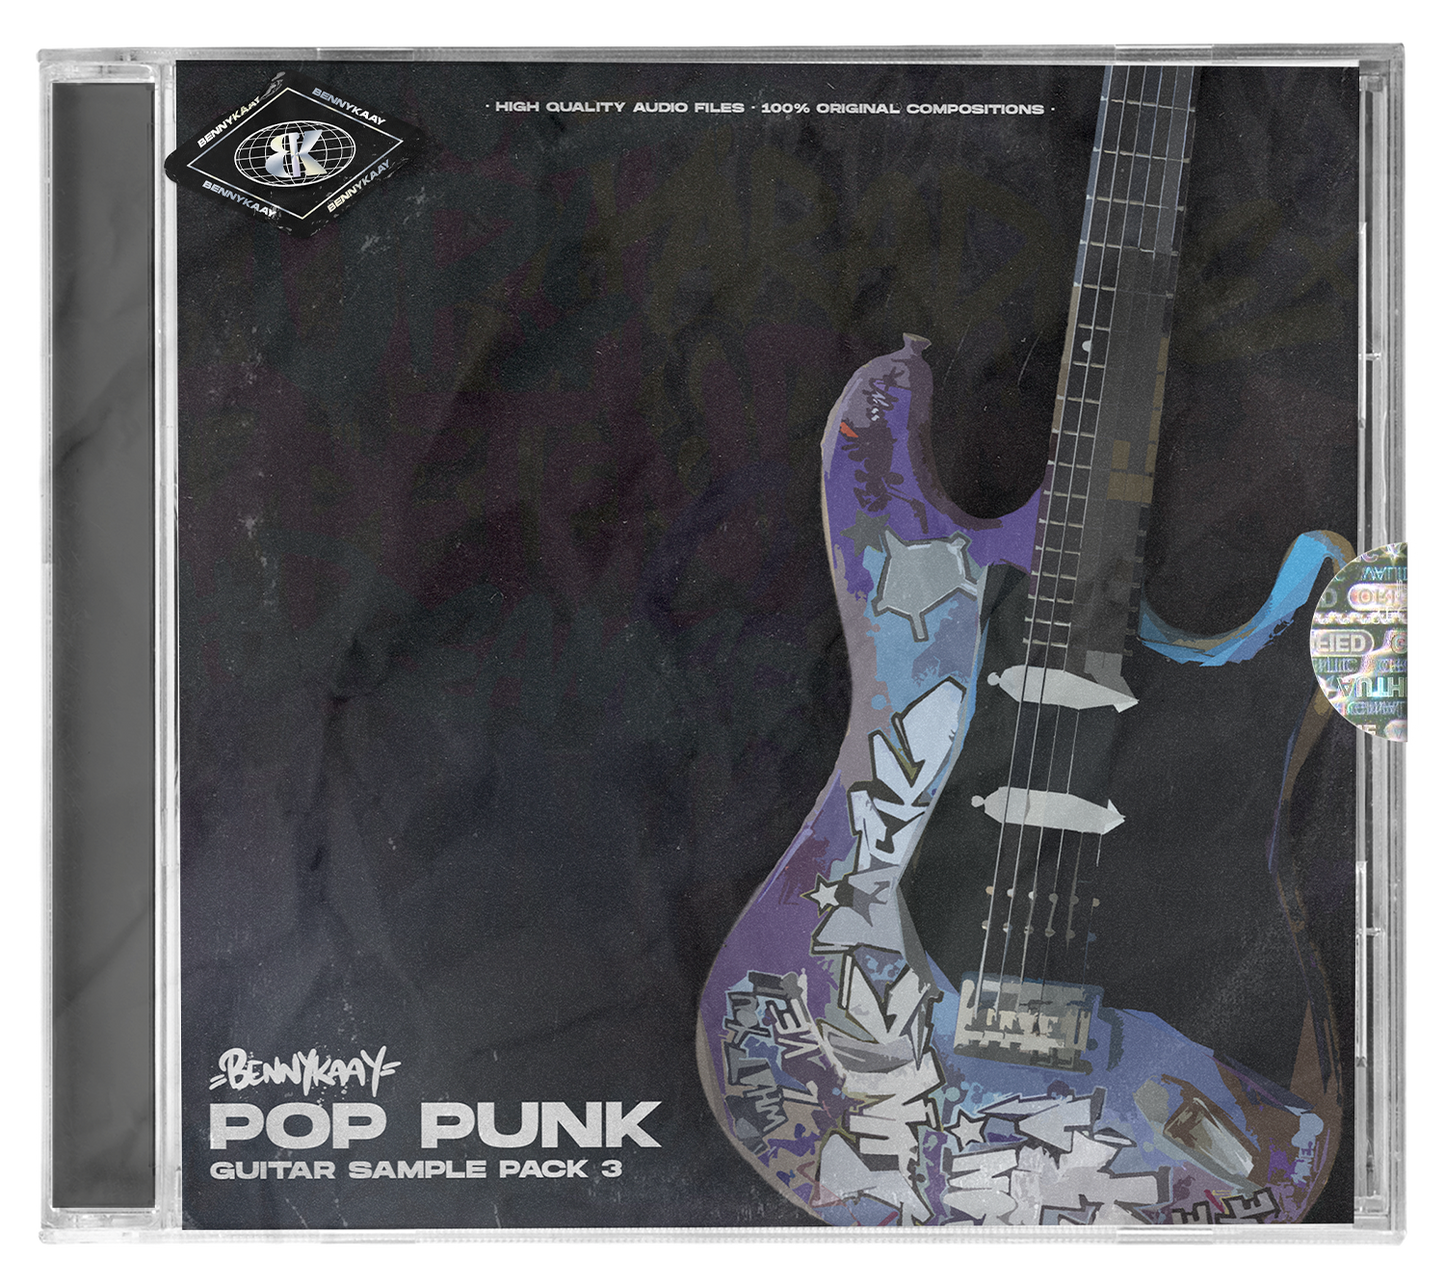 POP PUNK GUITAR SAMPLE PACK 3